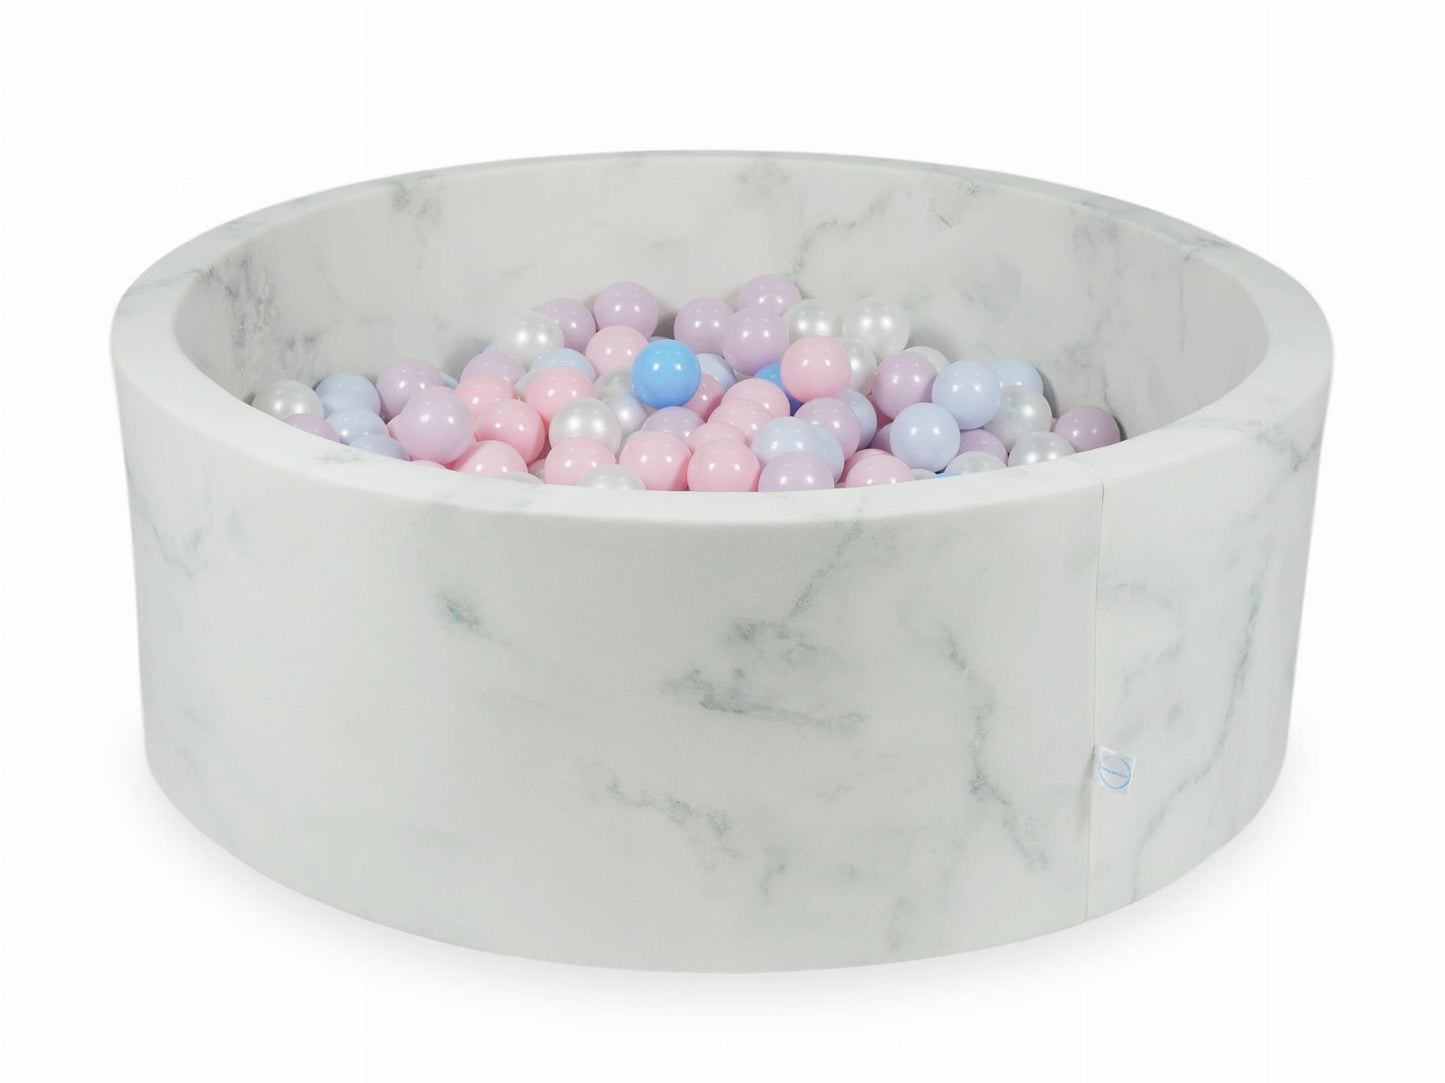 Piscine à Balles 110x40 marbre avec balles 500 pcs (rose clair, rose clair perle, bleu clair perle, bleu clair, perle)